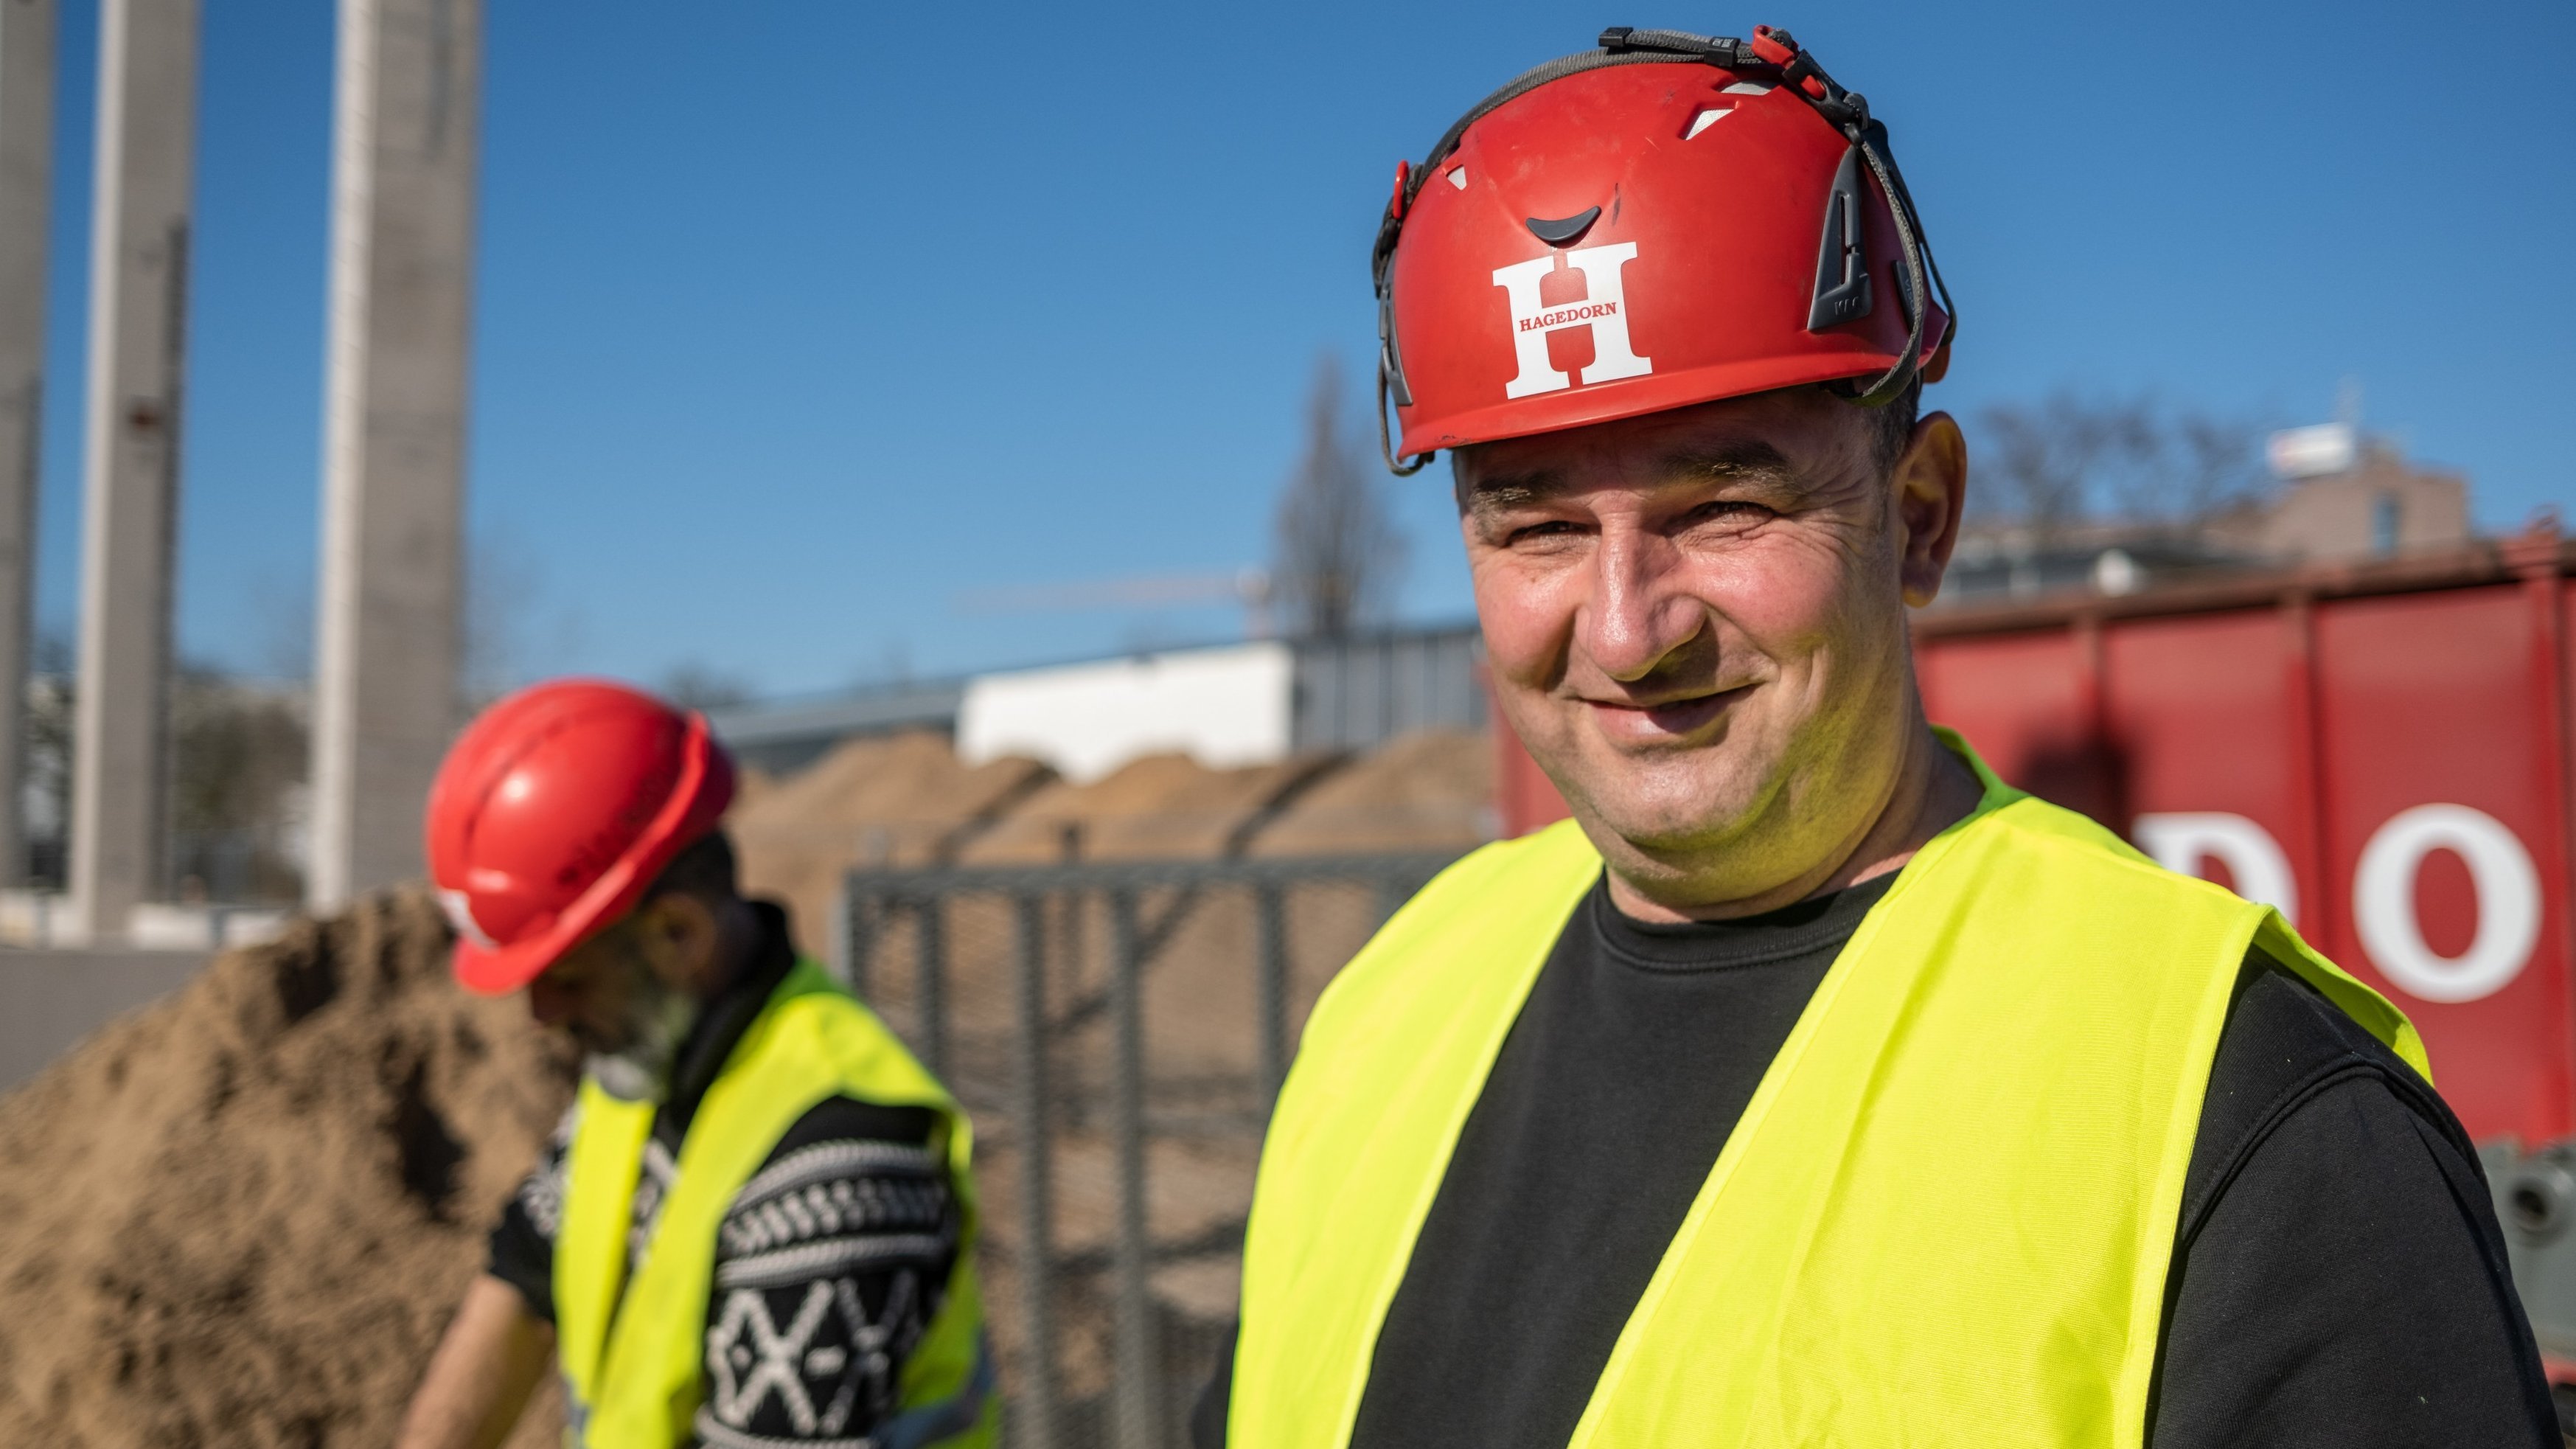 Porträt eines Bauarbeiters mit rotem Helm.